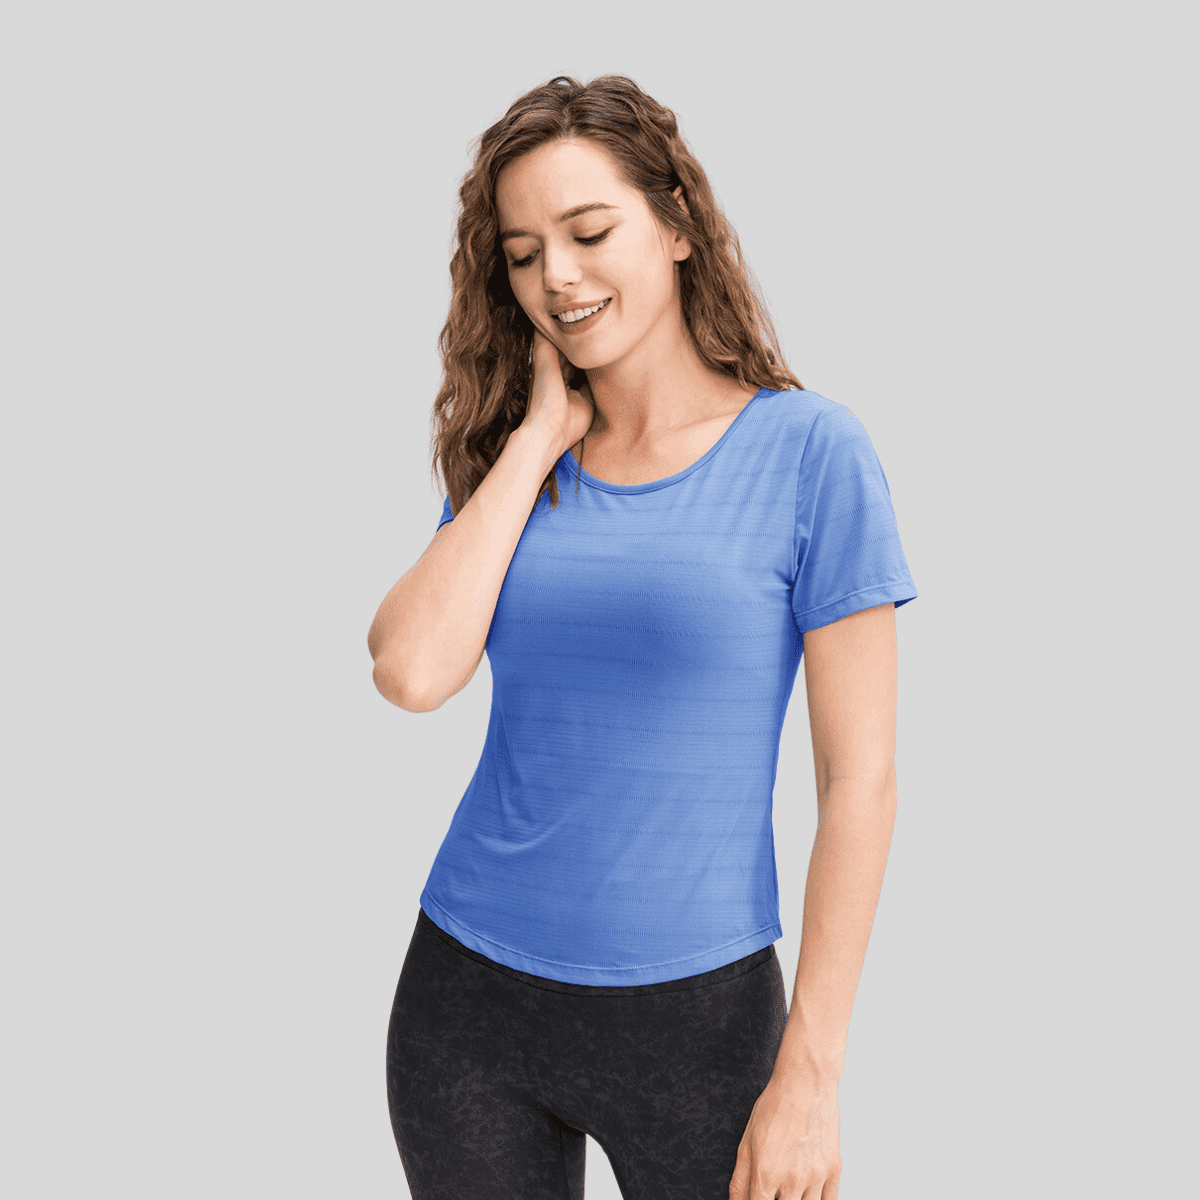 Women's Blue Fitness T-Shirt